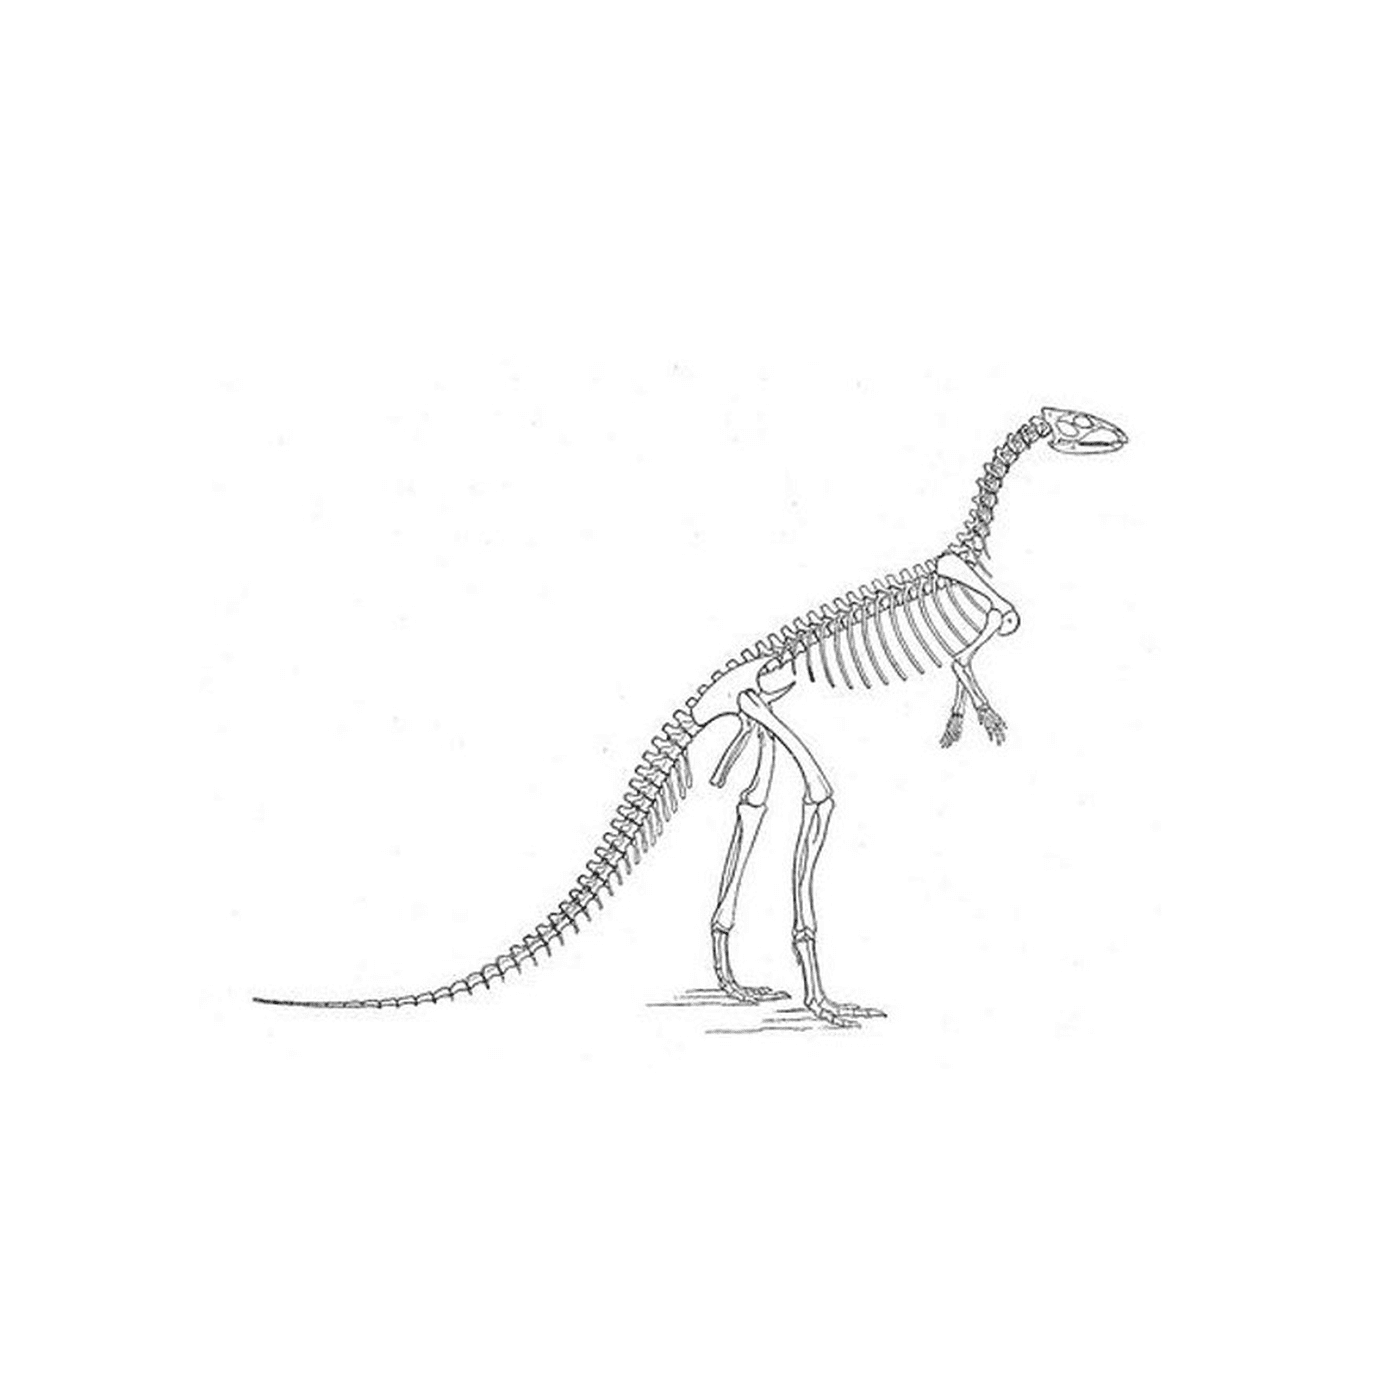   Un squelette de dinosaure 